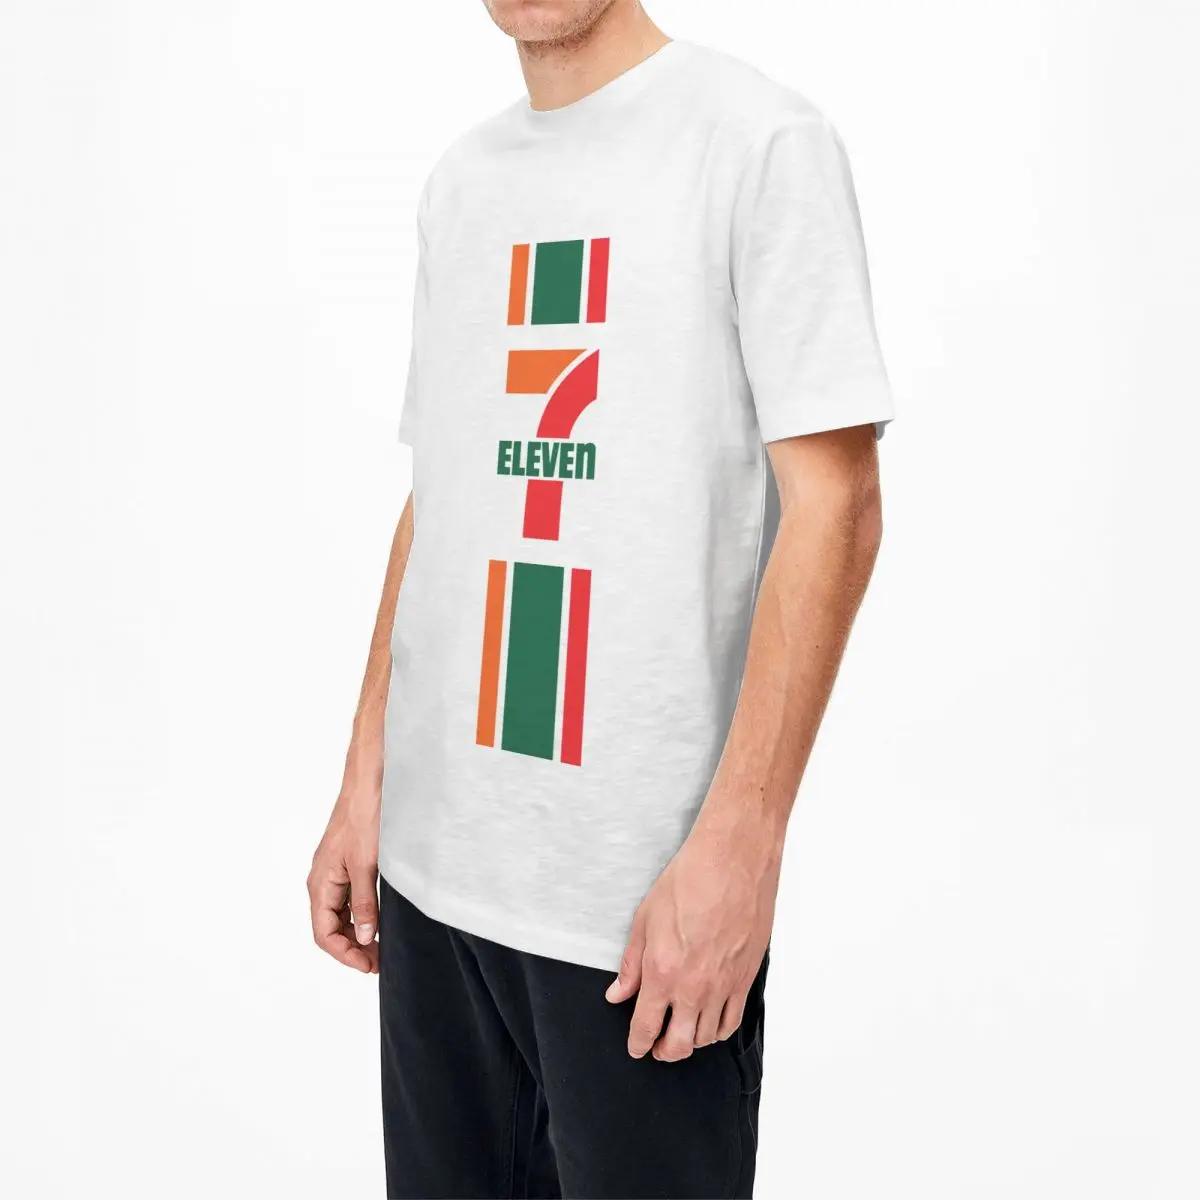 Burrat, Gratë e T Shirt Shtatë Njëmbëdhjetë Merch Qesharake 100% Këmisha Pambuku Supermarket Logon e T-Shirt të Ekuipazhit Qafë e Krye Dhuratat e Krishtlindjeve . ' - ' . 3